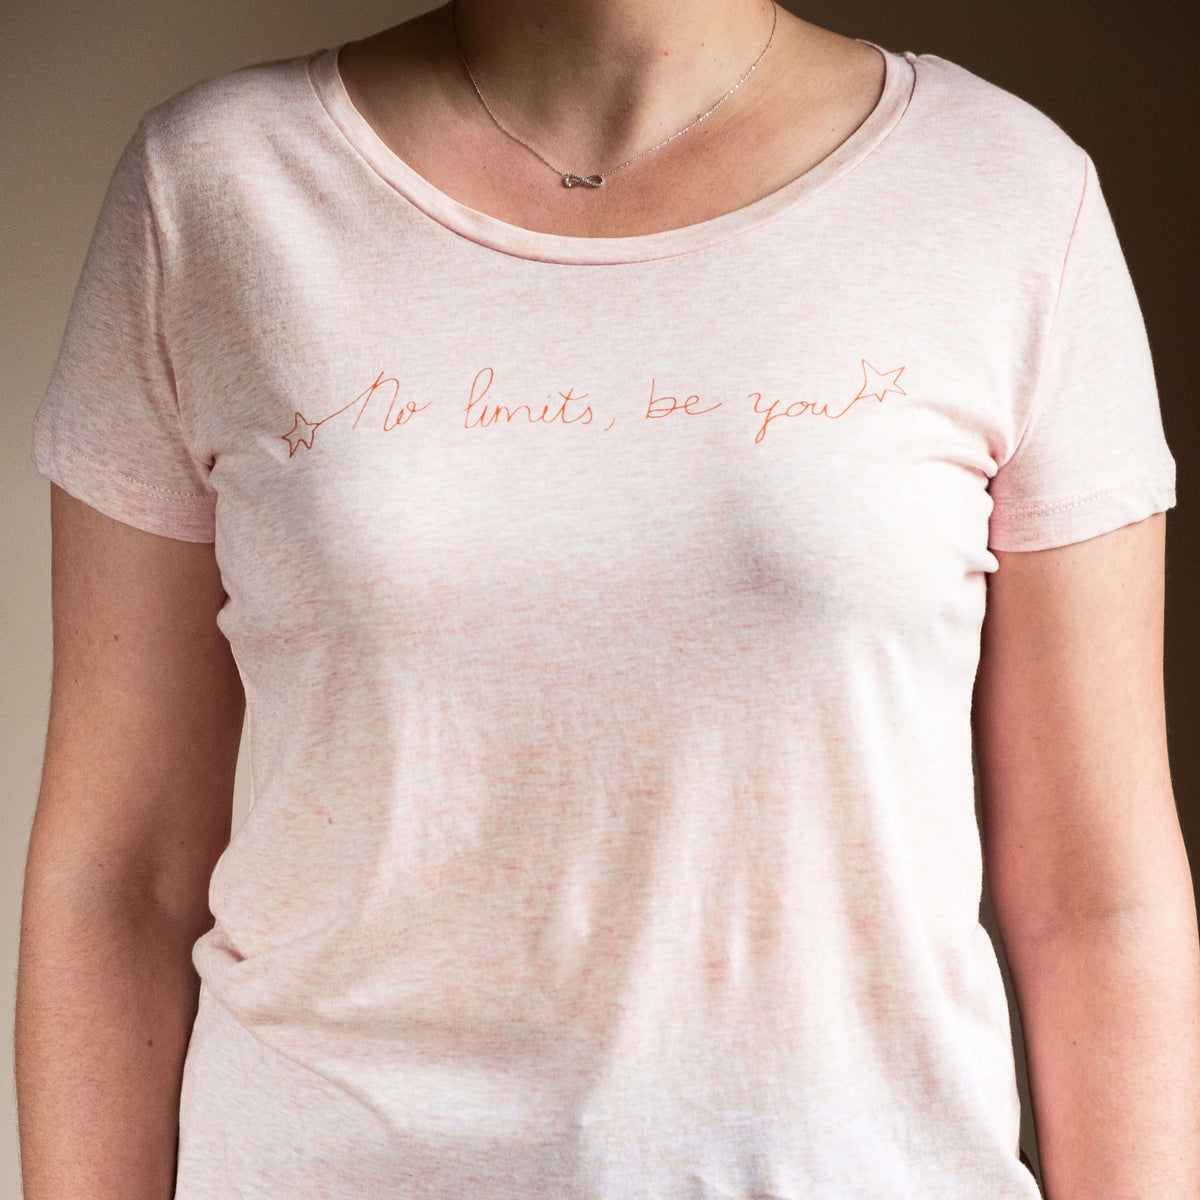 Camiseta rosa de algodón orgánico y serigrafiada a mano con tintas ecológicas. Texto serigrafiado en color naranja.